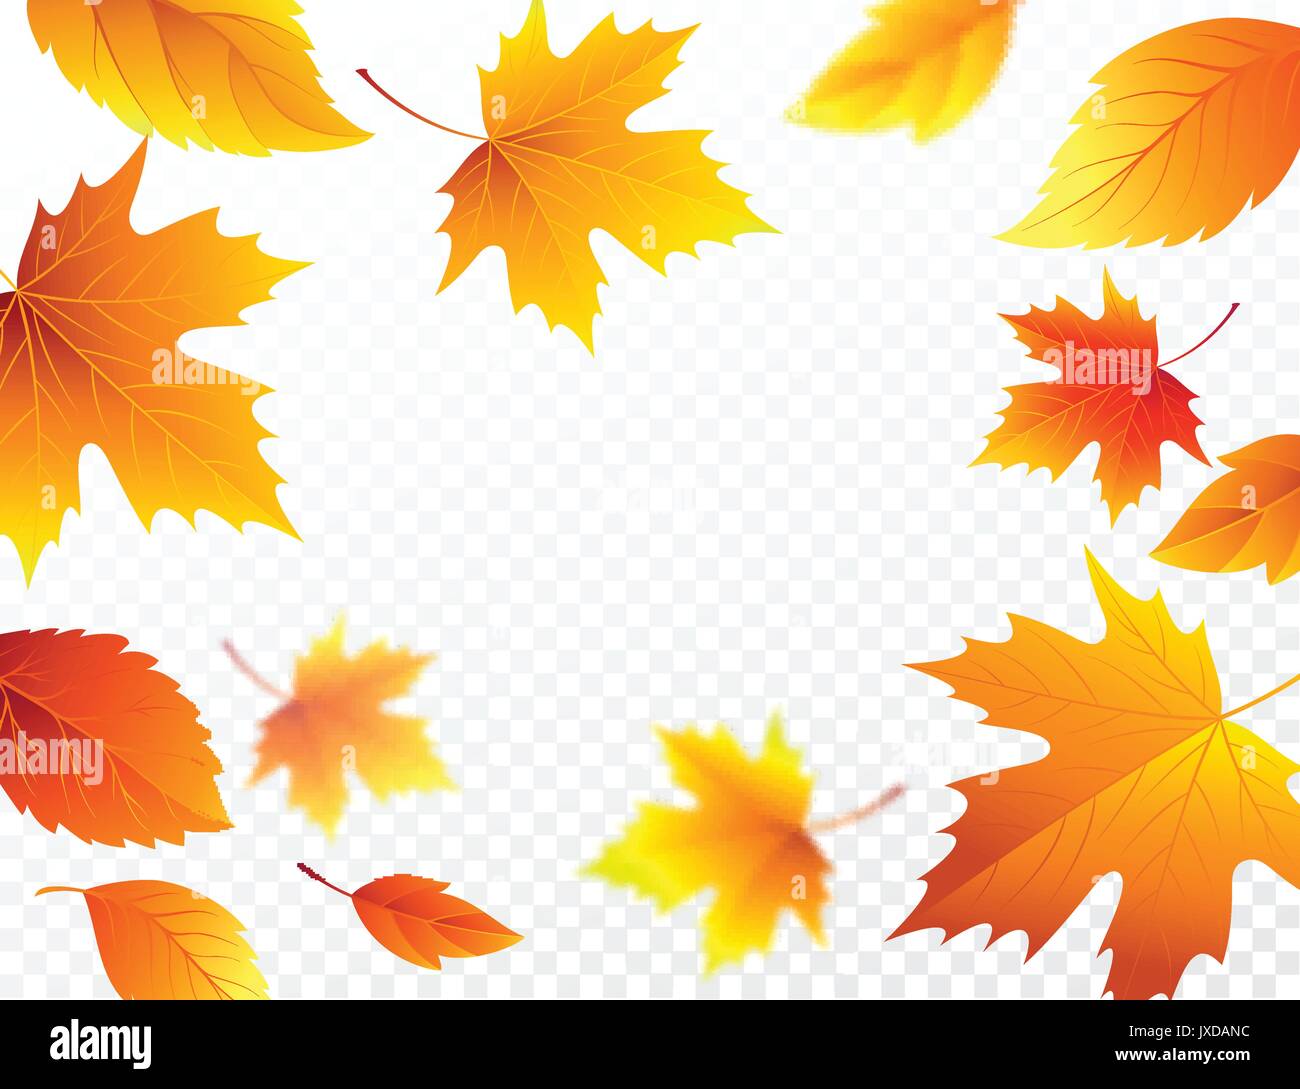 L'automne les feuilles qui tombent sur Checkered Background transparent. Feuillage d'automne feuille d'automne volant dans le vent de flou. Vector illustration Illustration de Vecteur